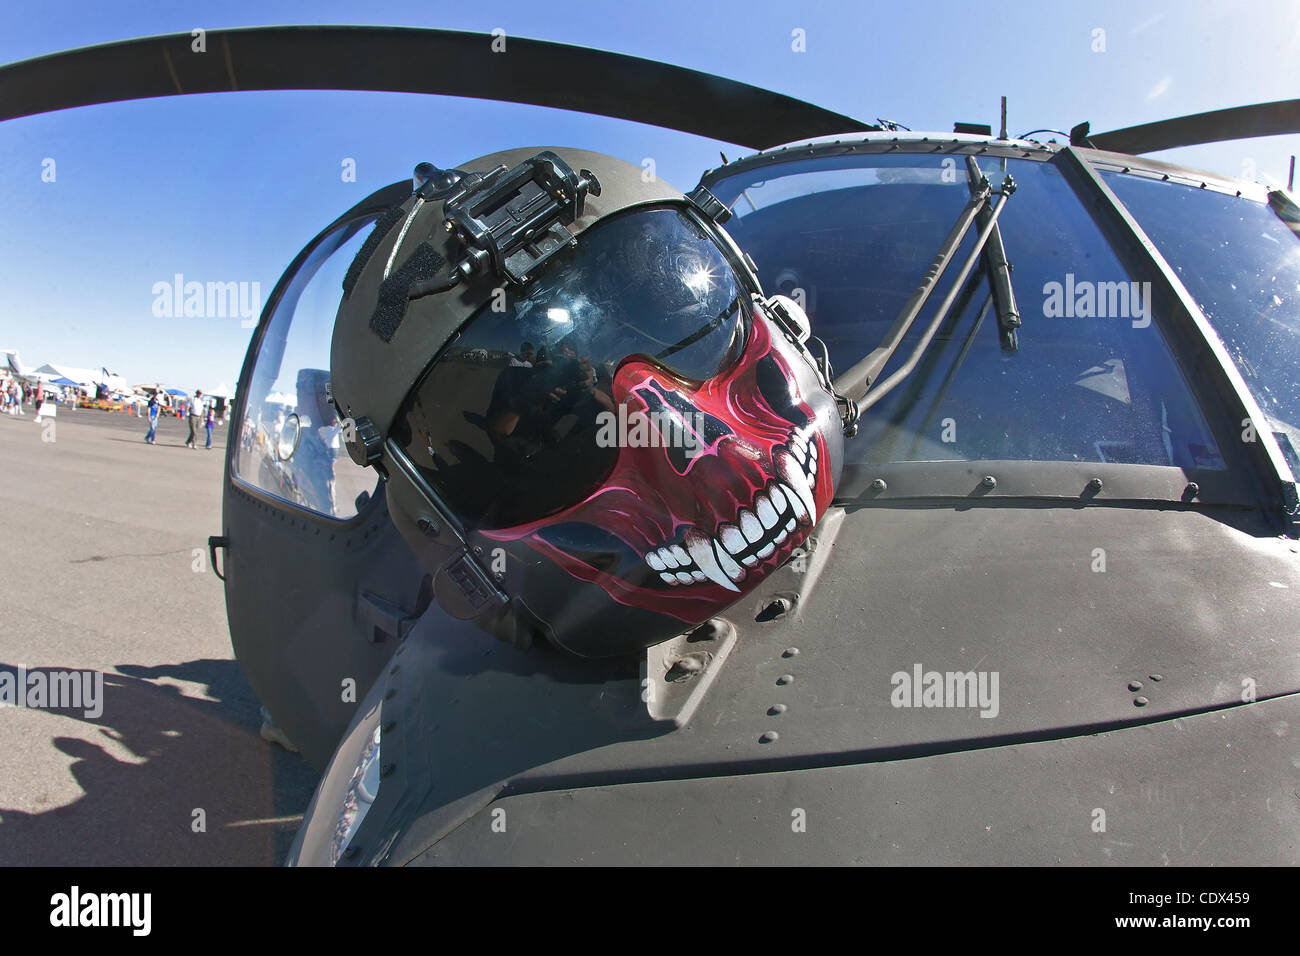 Agosto 27, 2011 - Denver, Colorado, EE.UU. - Un casco de un piloto de  helicóptero Blackhawk descansa sobre la nariz del helicóptero para su  visualización durante el Rocky Mountain Airshow en Broomfield. (